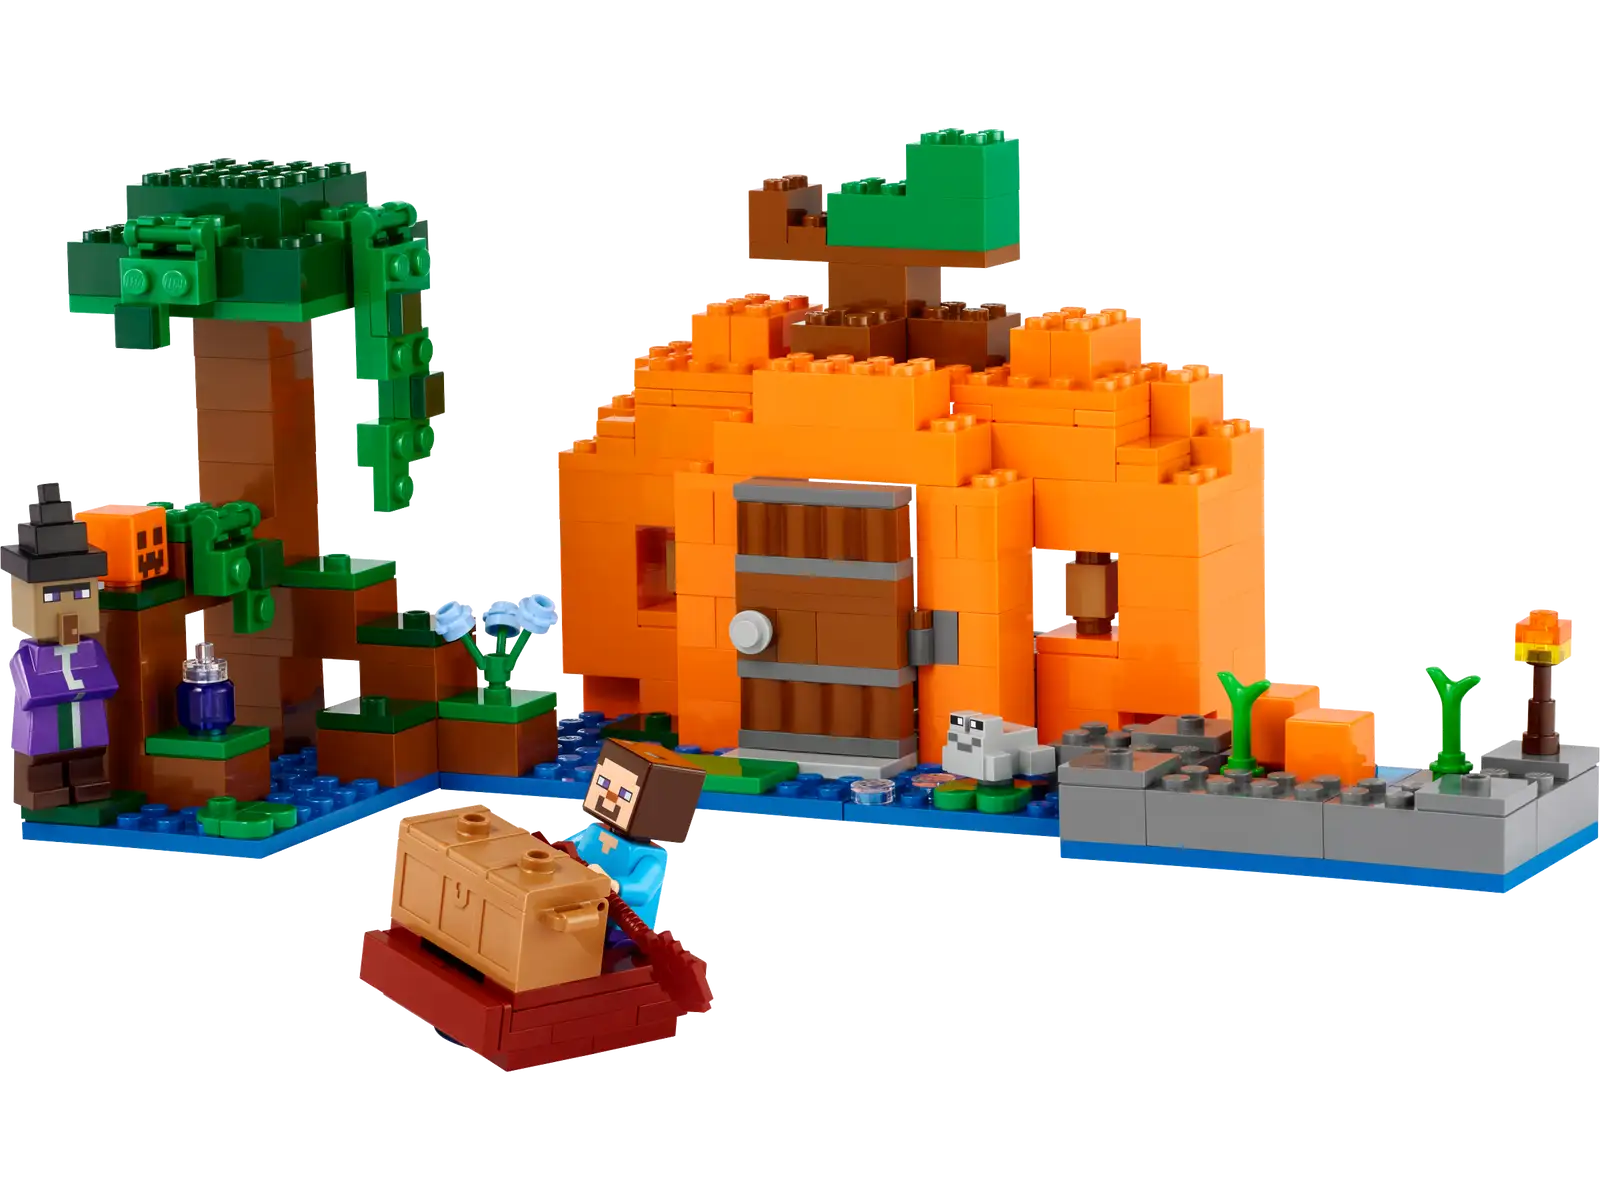 The Pumpkin Farm